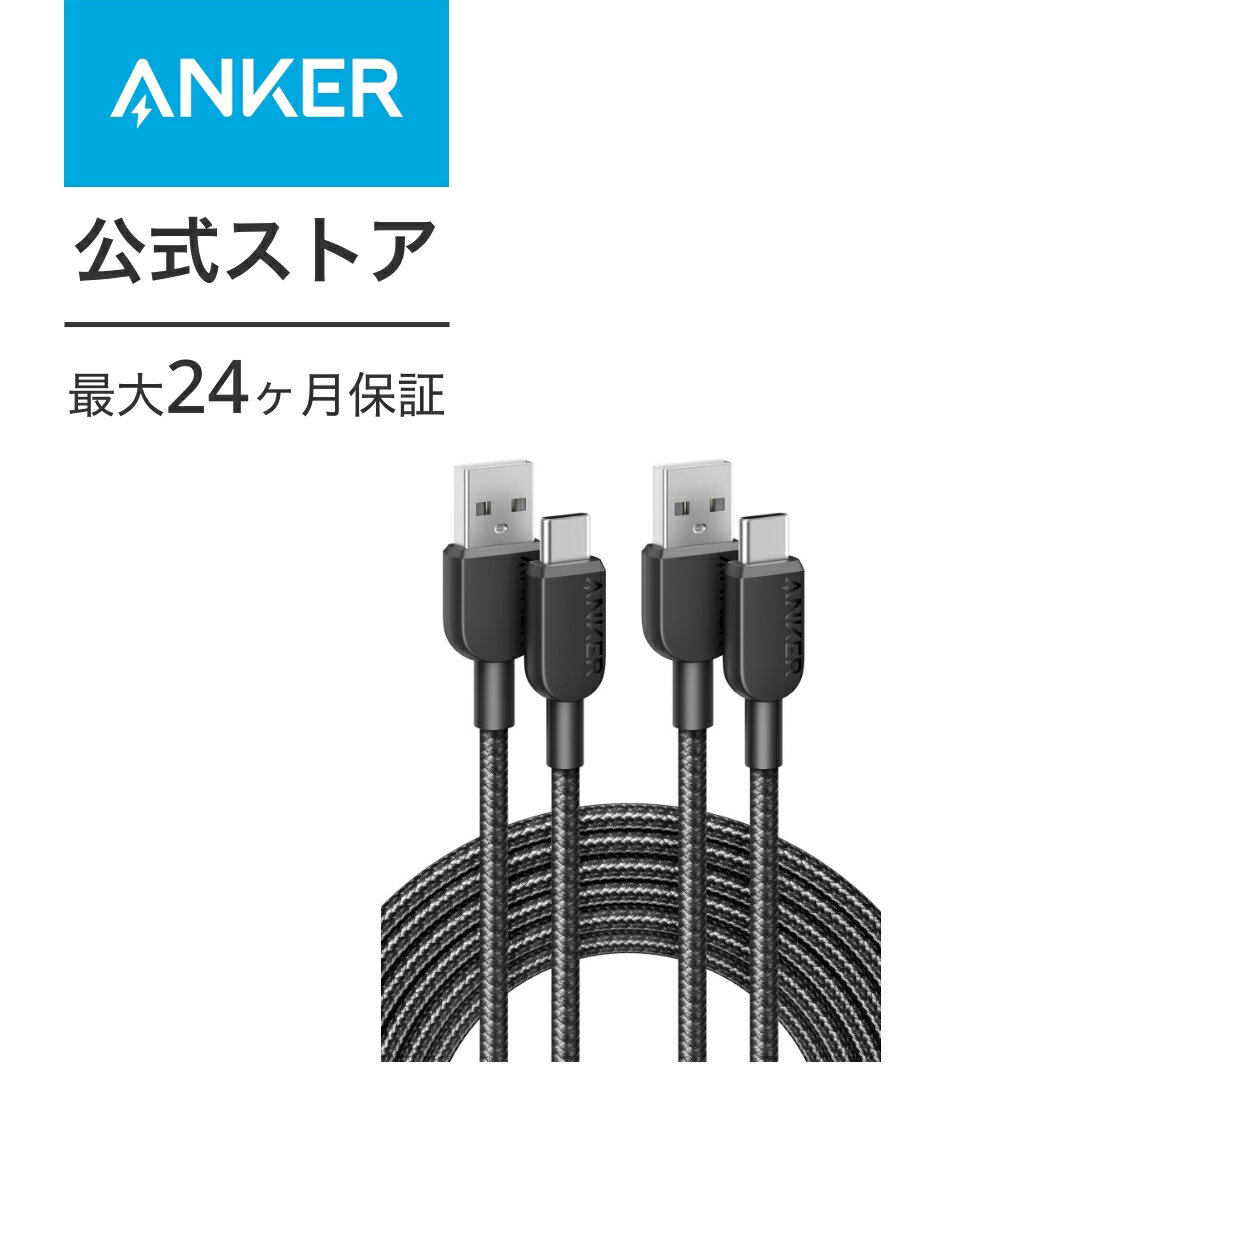 【2本セット】Anker 310 高耐久ナイロン USB-C & USB-A ケーブル USB 2.0 フルスピード充電 Galaxy Note 10 Note 9 / S10+ S10 LG V30各種対応 3.0m 2本セット 